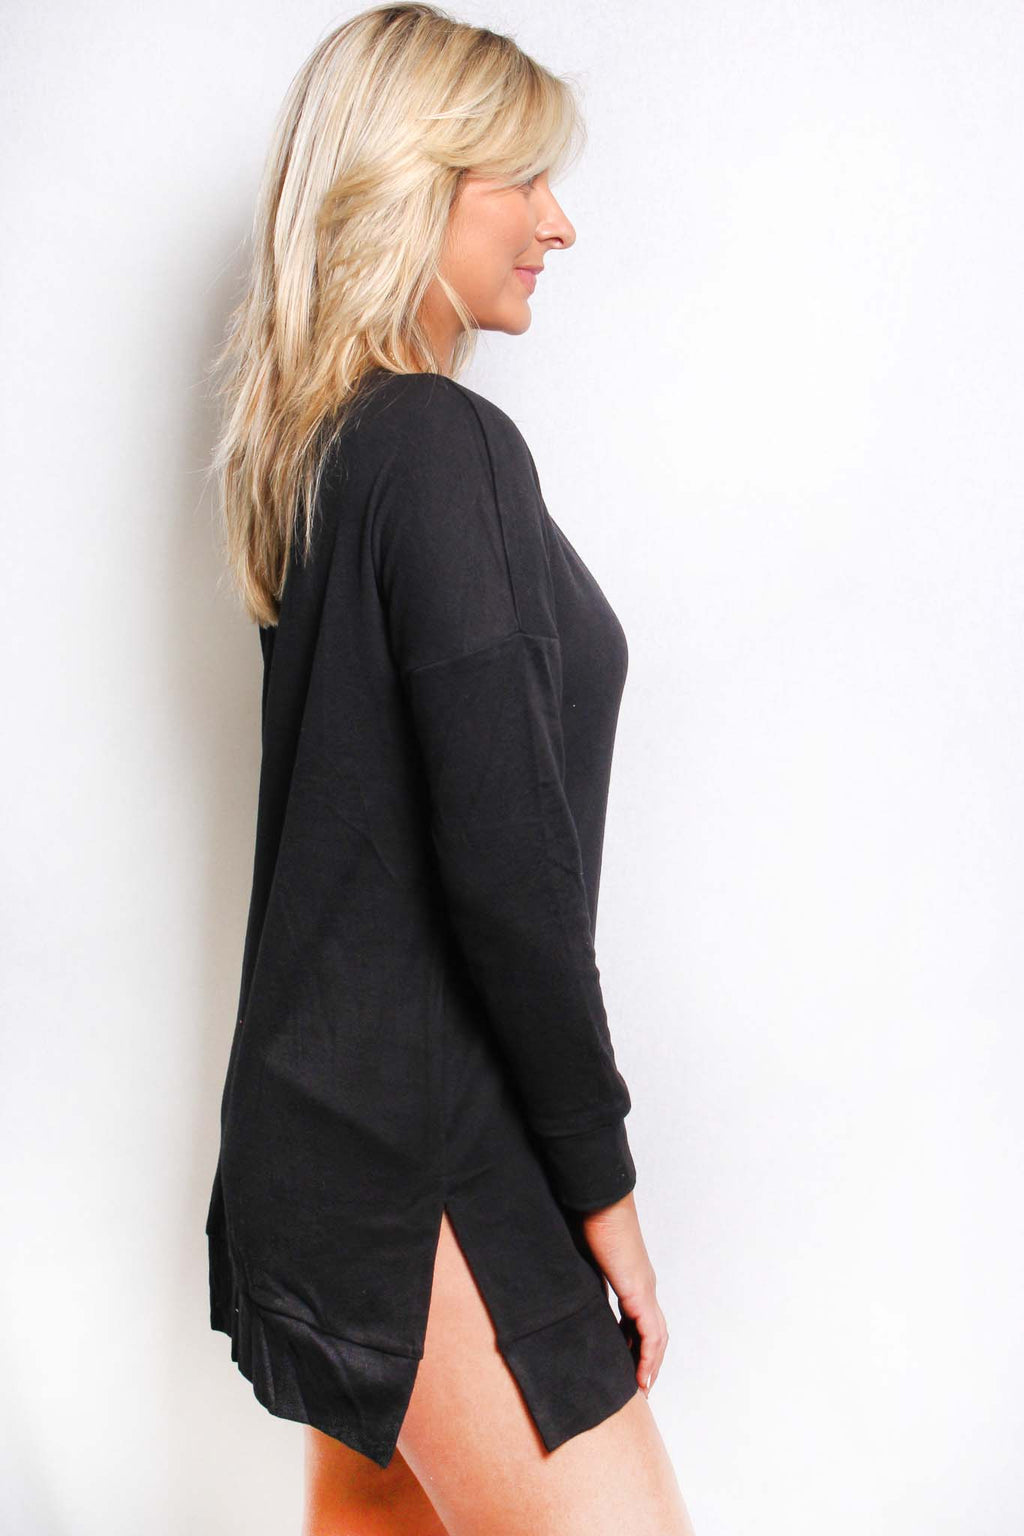 Women's Long Sleeves V Neck Basic Sweater